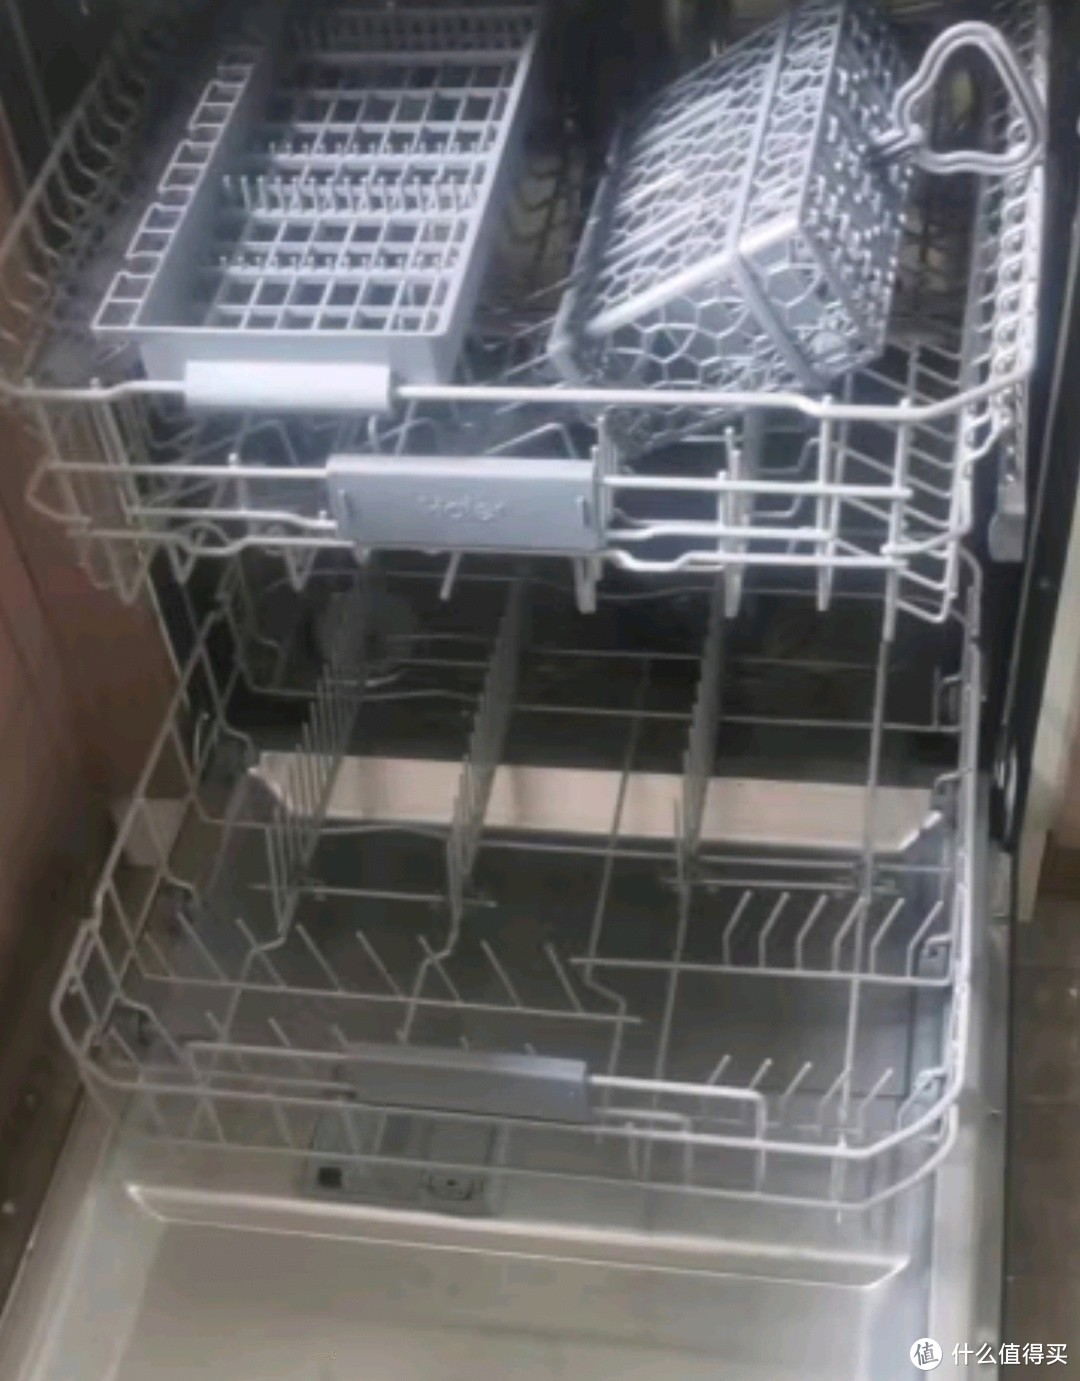 海尔14套嵌入式洗碗机W30 变频一级水效 升降碗篮 分区洗 智能开门速干独立式两用 EYBW142286GGU1